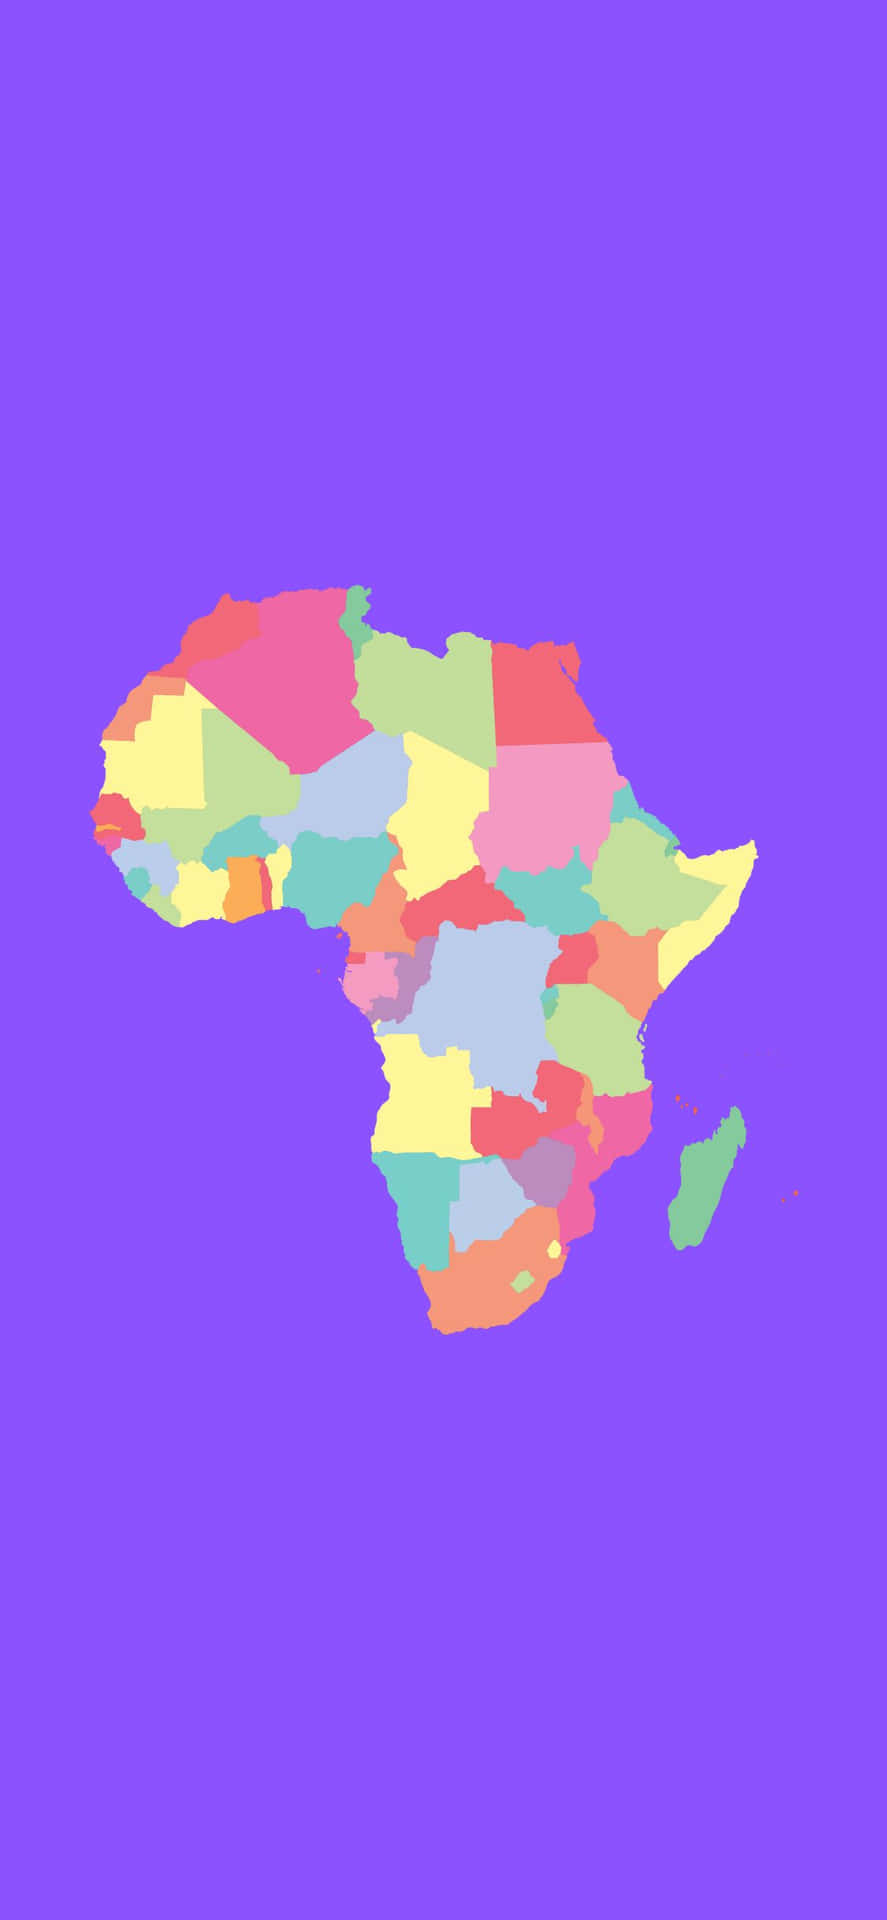 Afrikanskkarta På En Lila Bakgrund.